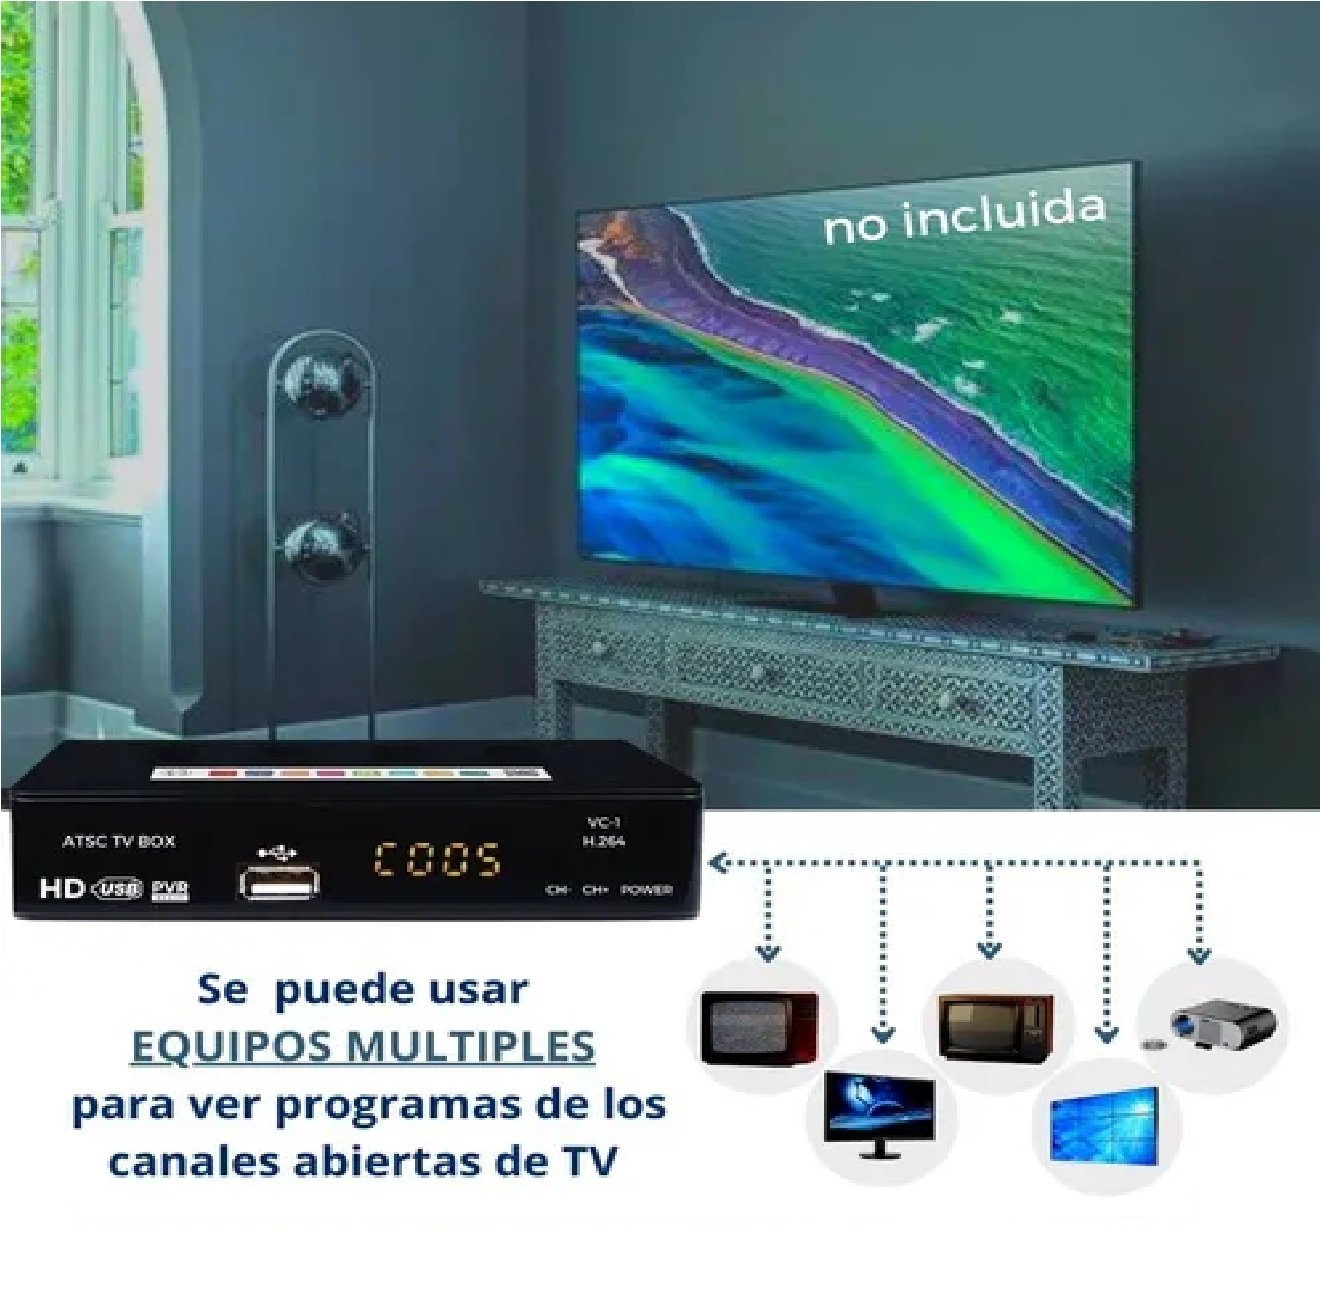 Fonoluz S.A. - CONVERSOR DE TV ANALÓGICO A DIGITAL HD. No tires tu  televisor, podes ver en calidad HD los canales de aire que transmiten en  forma digital‼️ . 📌DECODIFICADOR / CONVERSOR